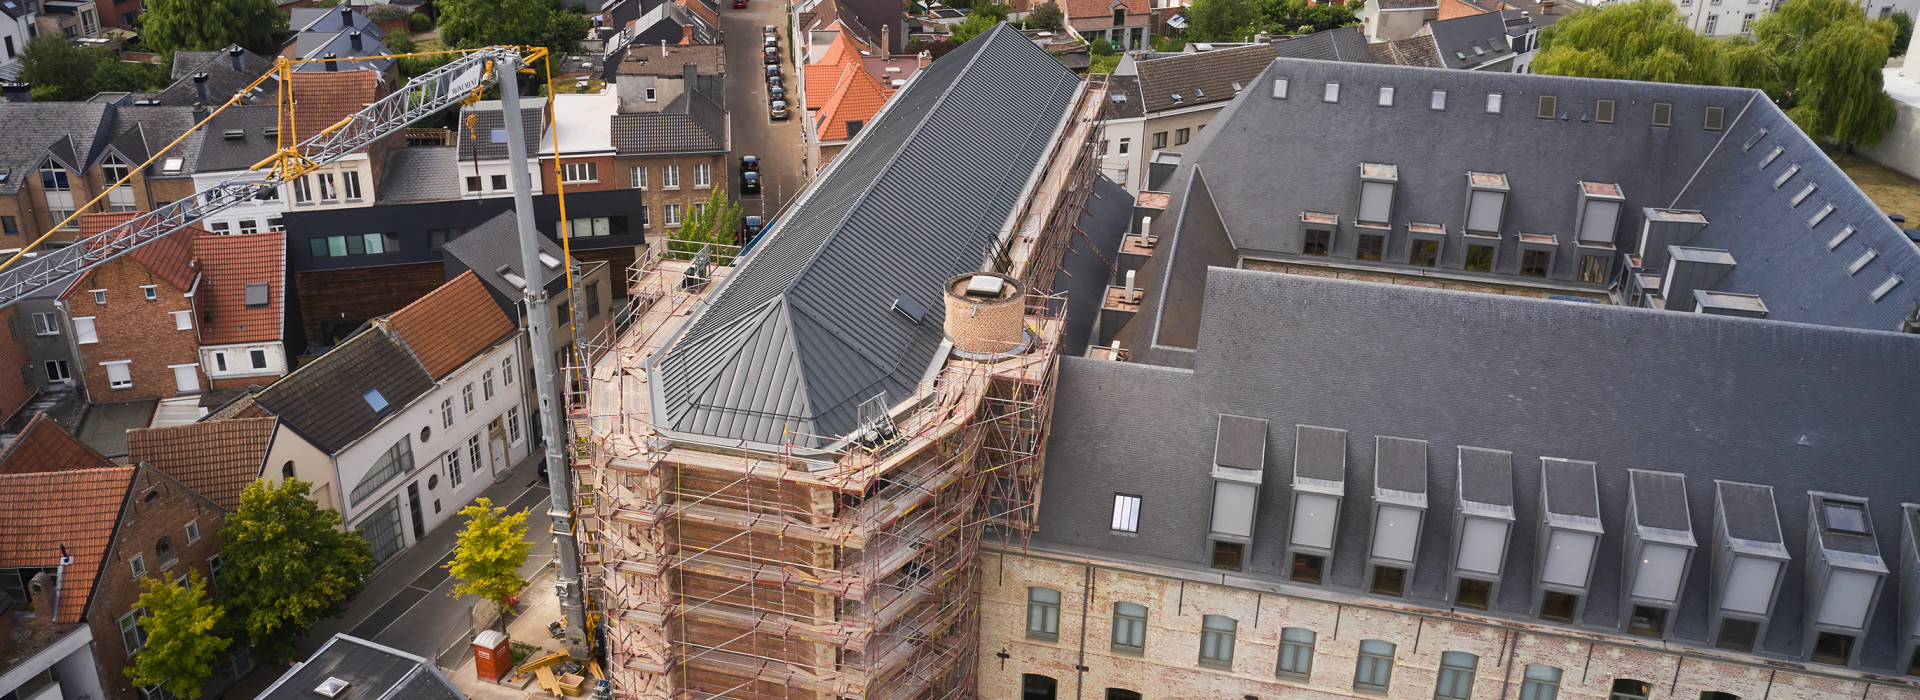 PV-Anlage für 400 Jahre altes Dominikanerkloster in Mechelen, Belgien